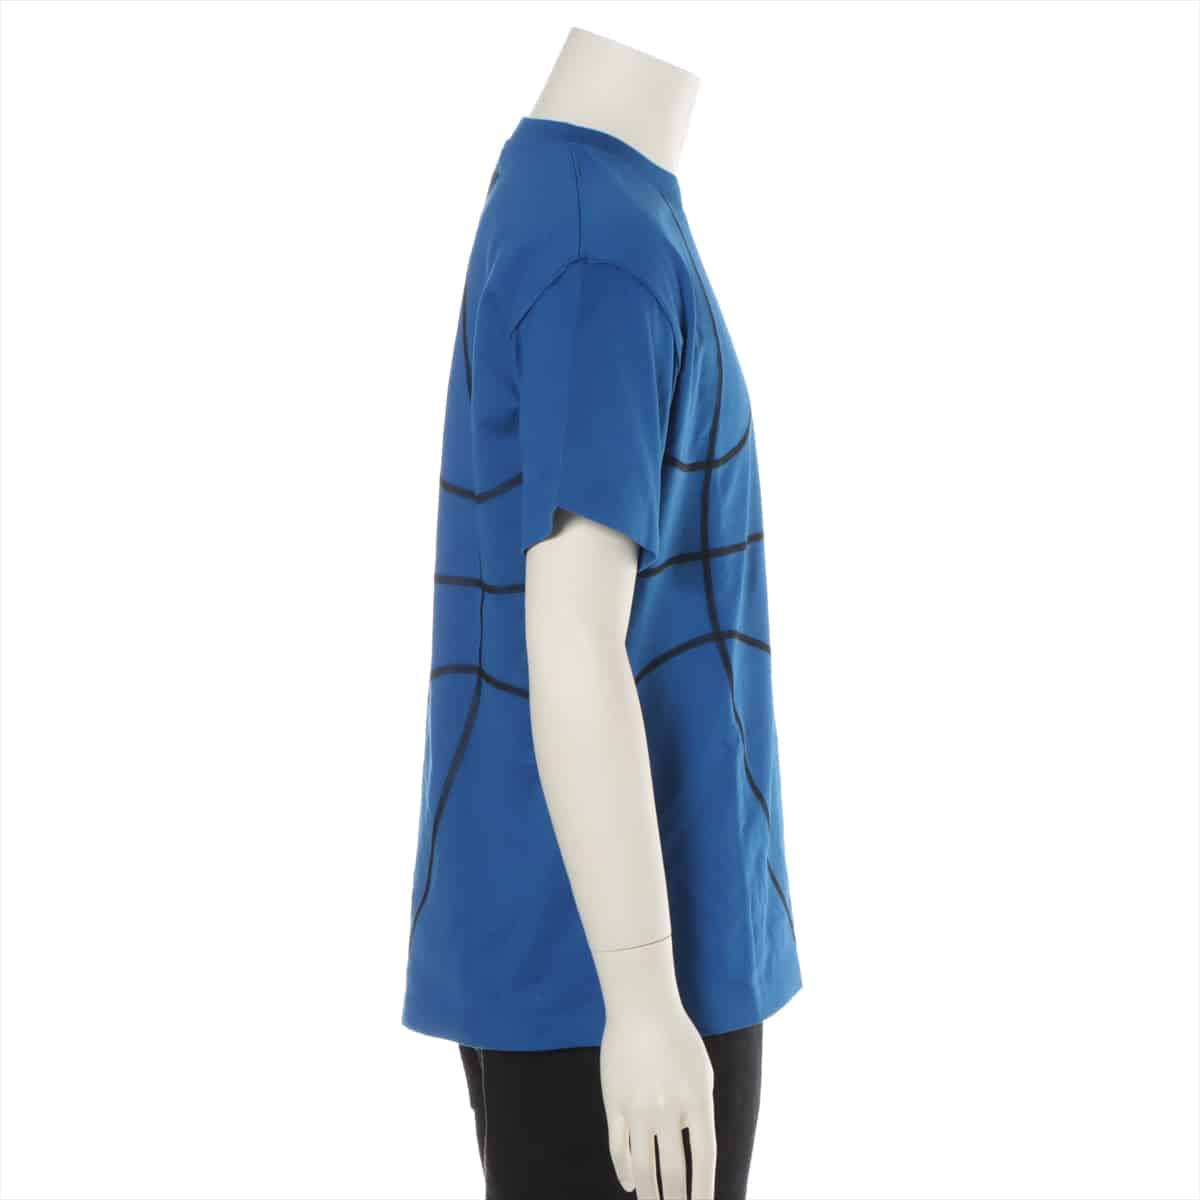 Louis Vuitton x NBA RM211M Cotton T-shirt S Men's Blue